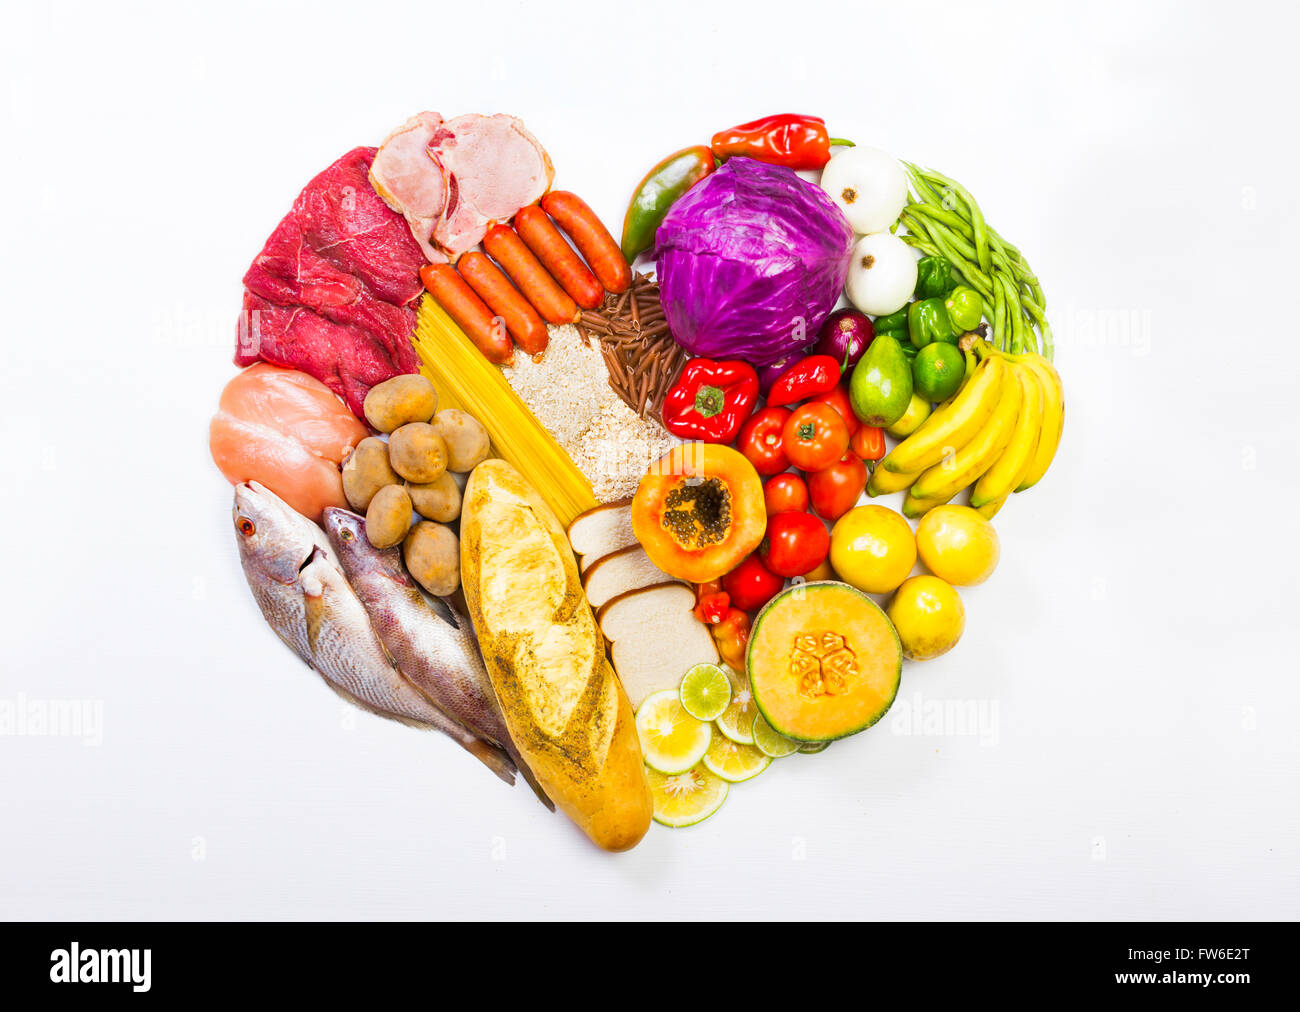 Gesunde Ernährung, das Shooting gehören Eiweiß, Kohlenhydrate, gute Fette, Obst und Gemüse. in der Form einer h angeordnet Stockfoto